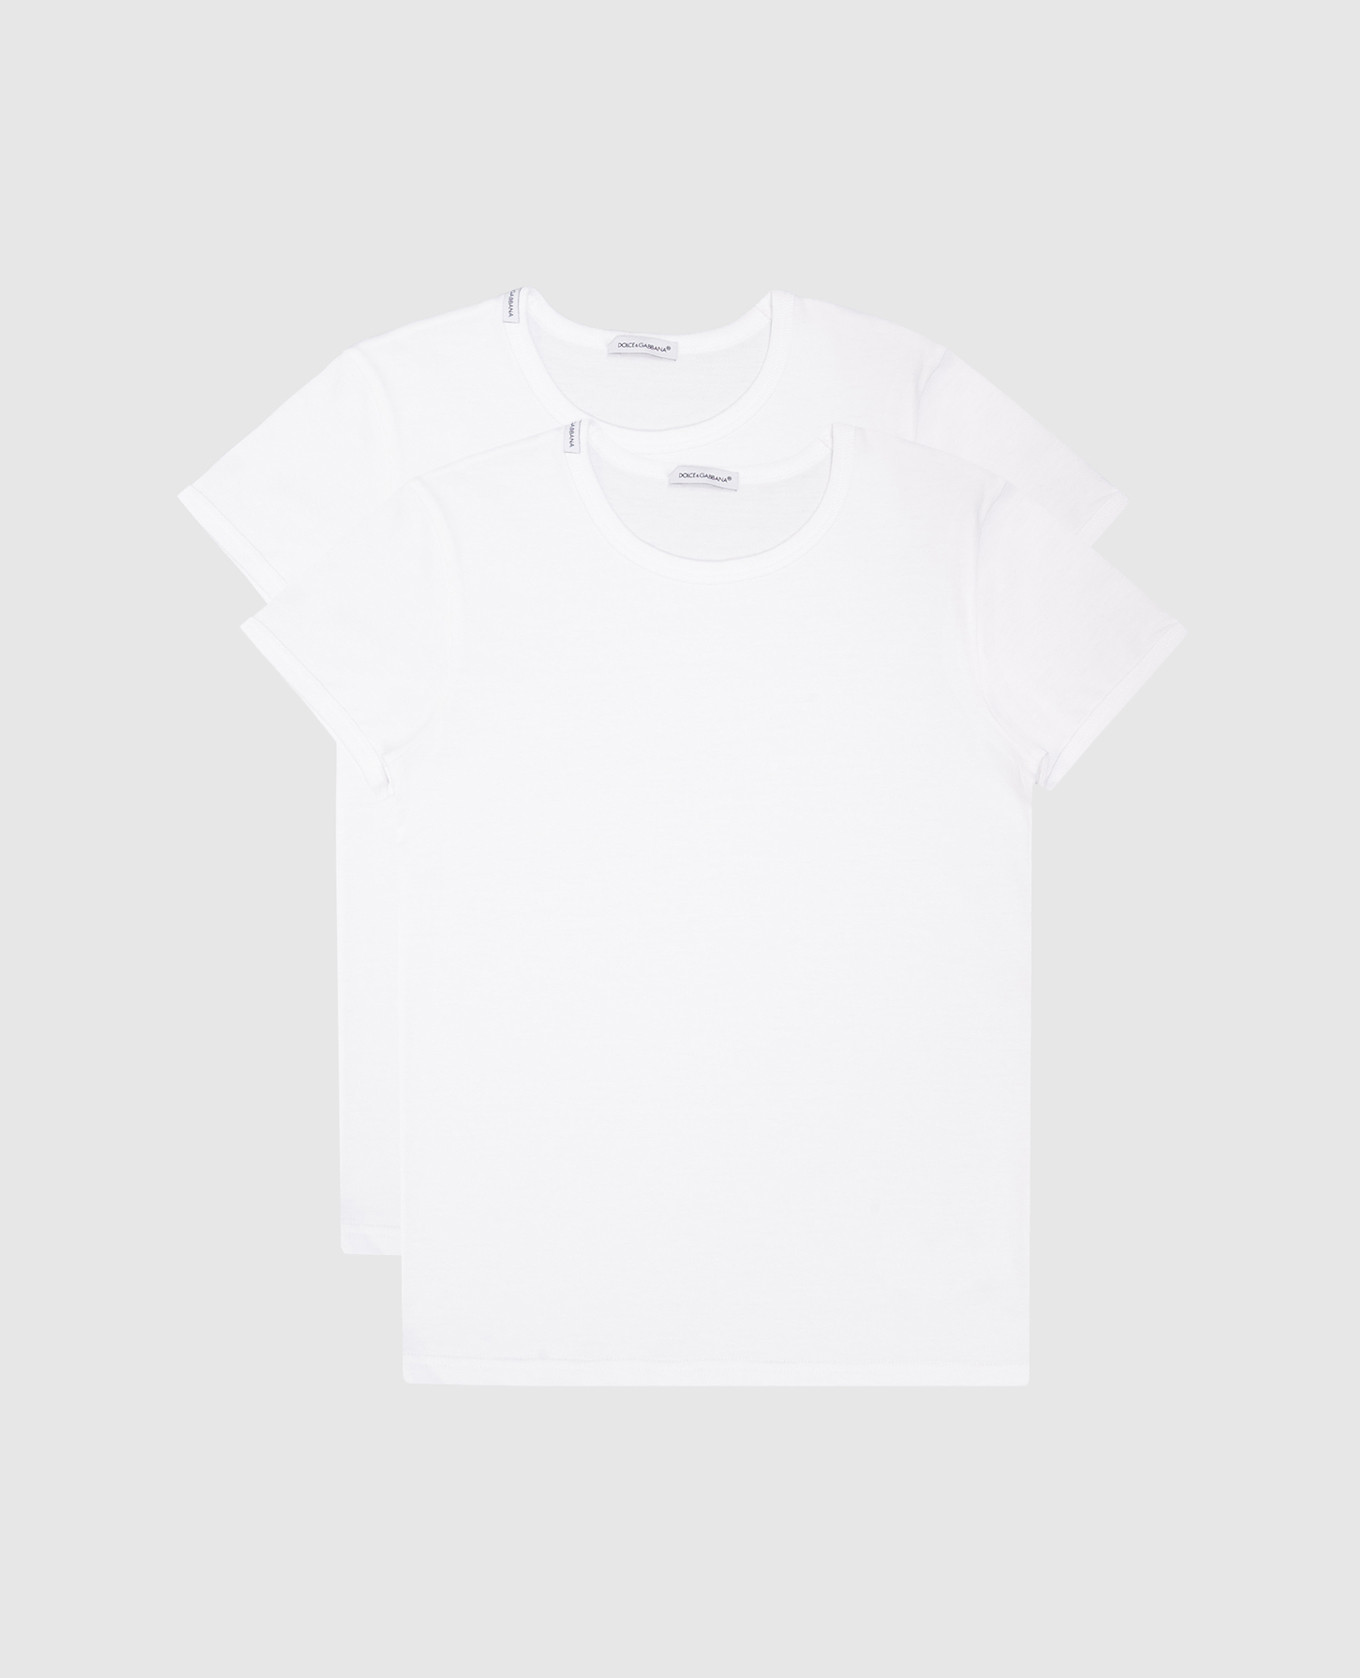 Детский набор белых футболок с логотипом.